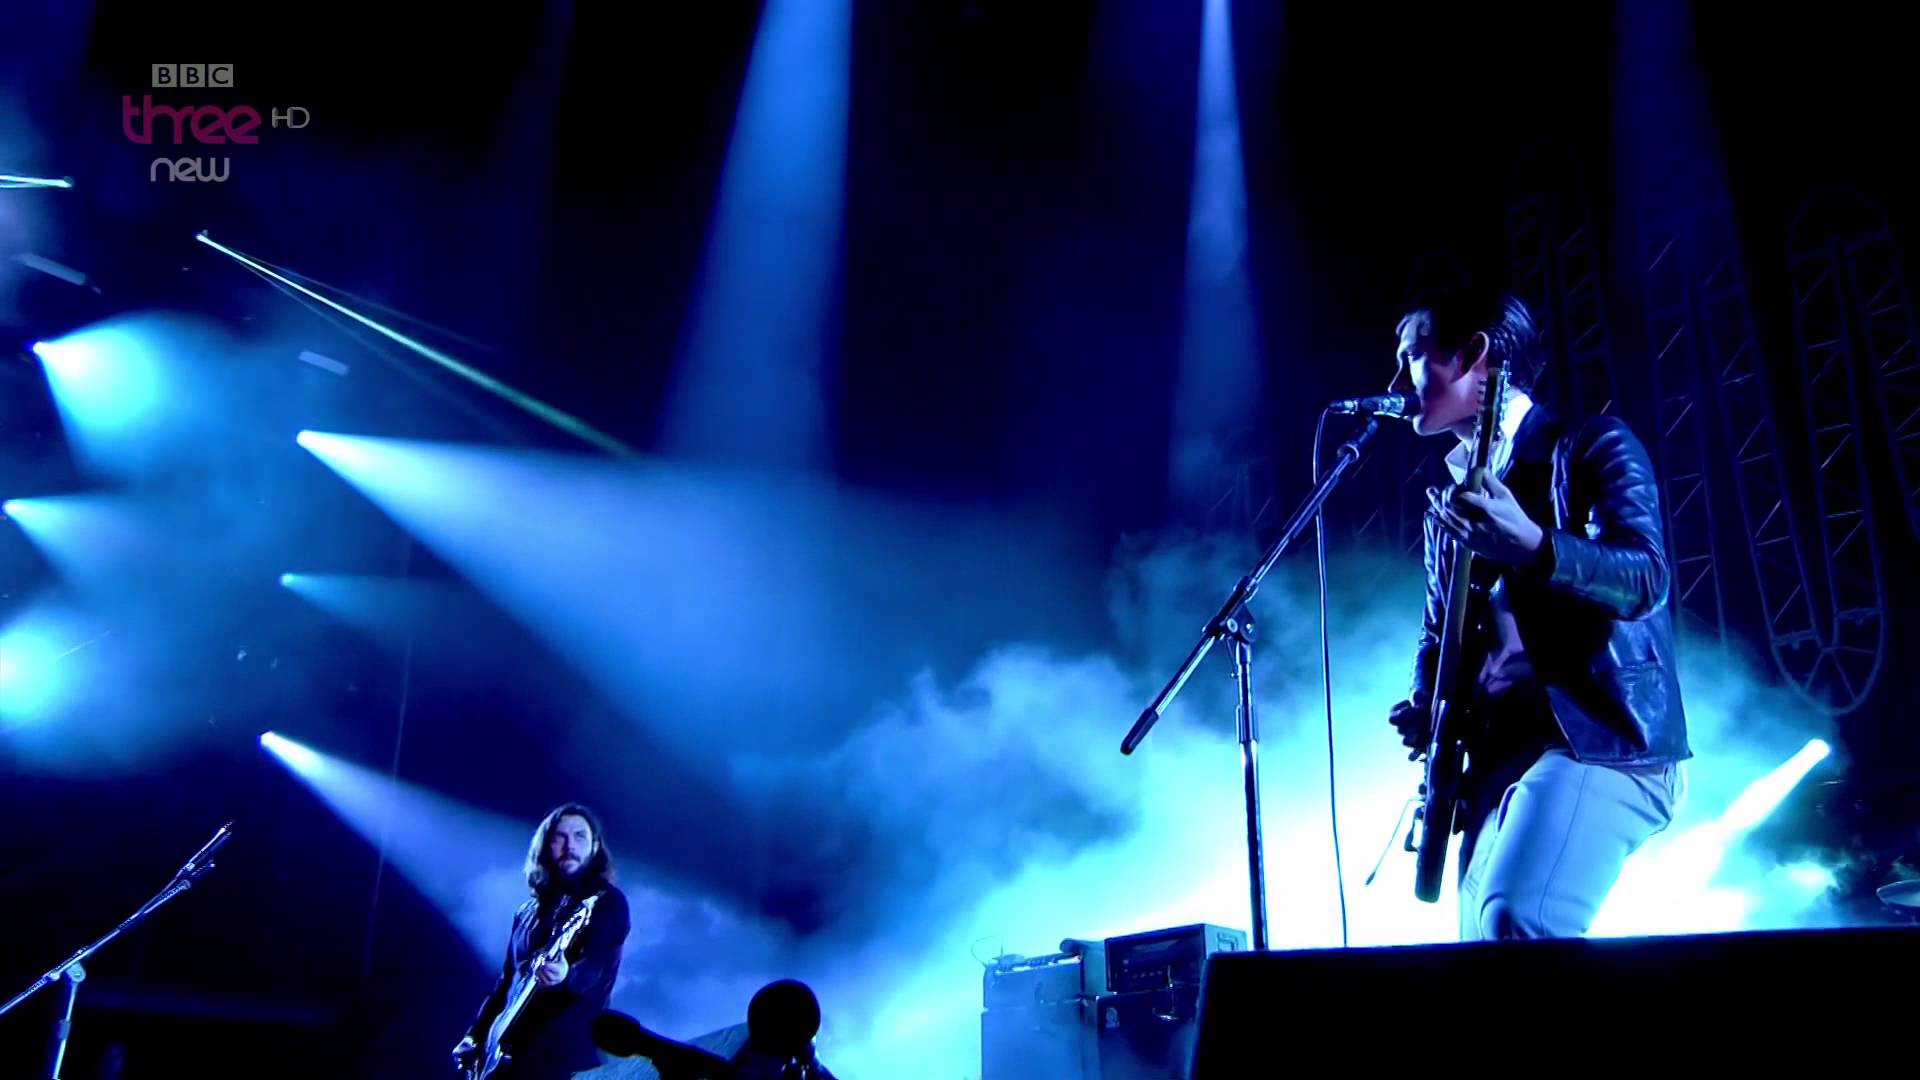 Arctic Monkeys Reading Festival 2014 1080p full HD